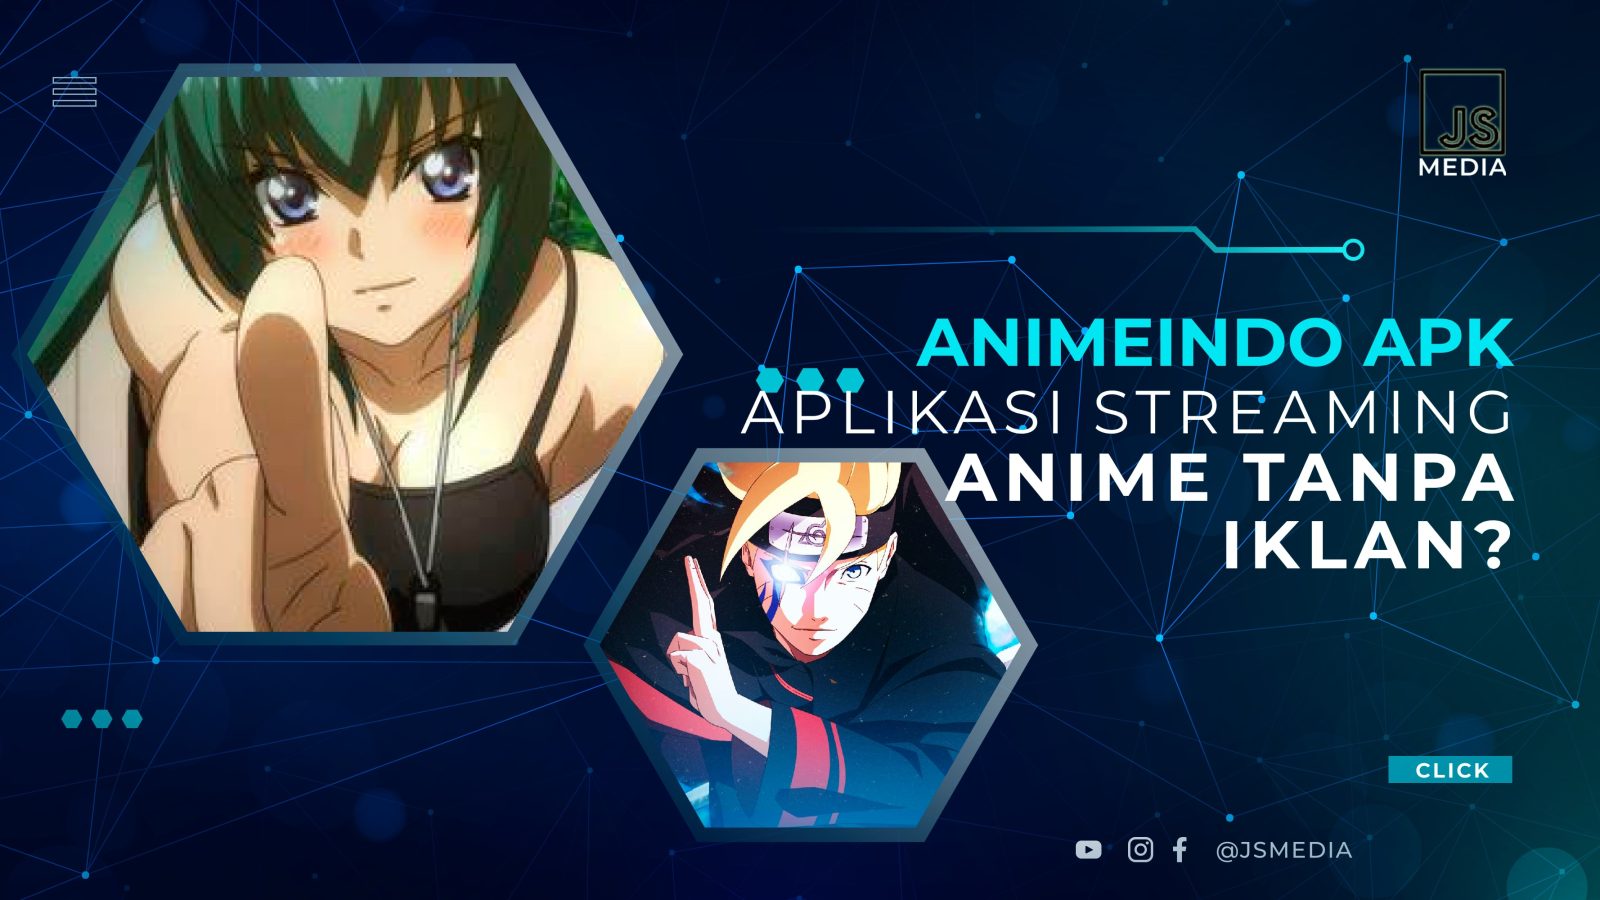 Animeindo APK, Aplikasi Streaming Anime Wajib Coba